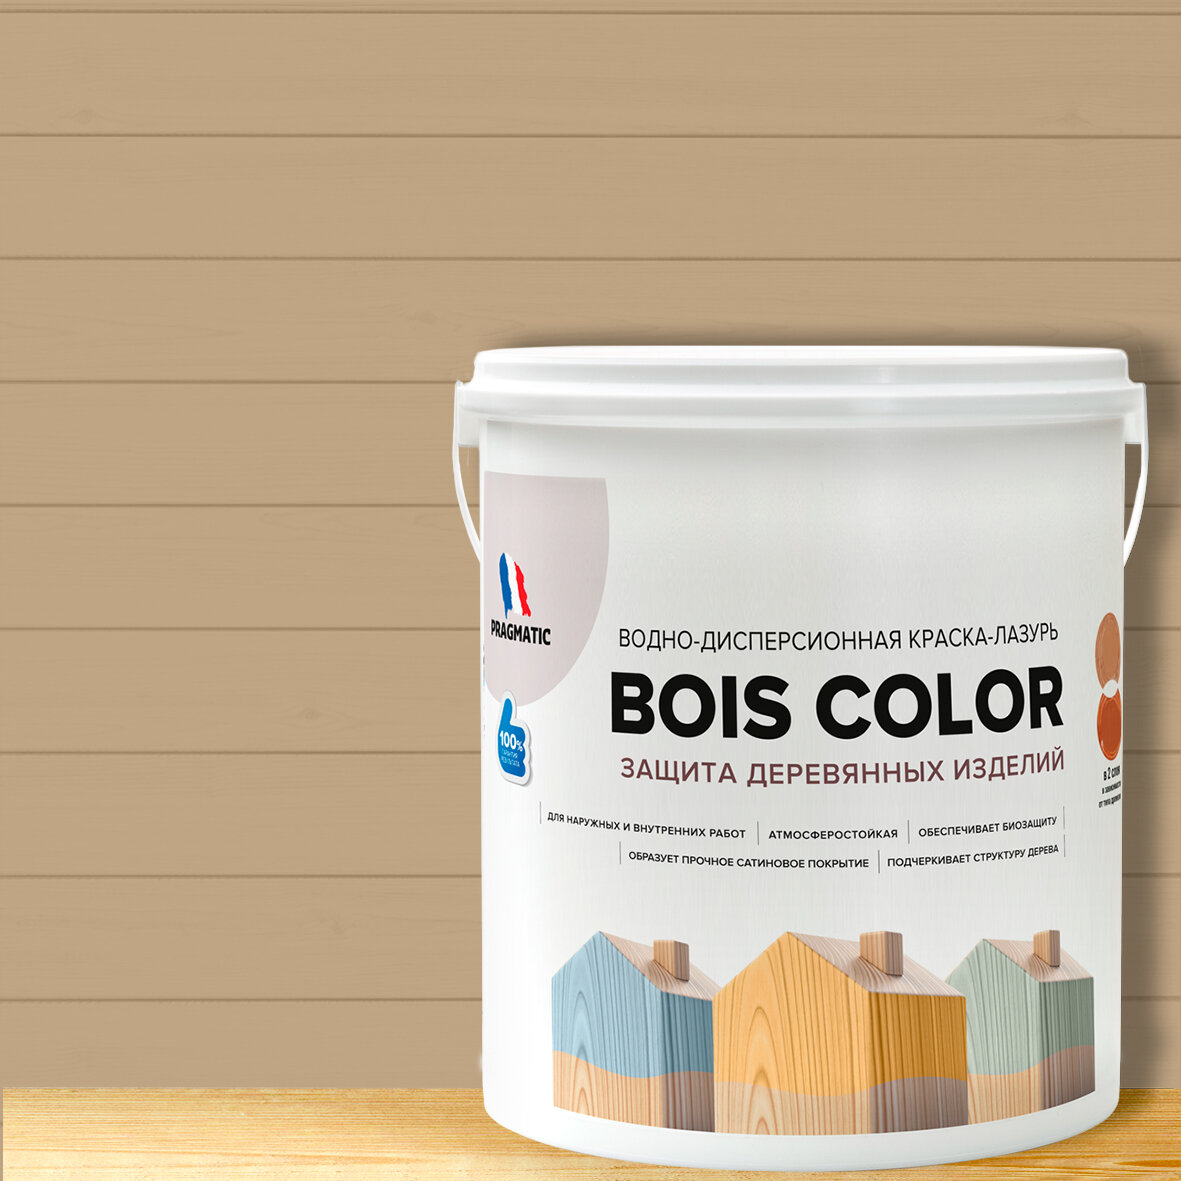 Краска (лазурь) для деревянных поверхностей и фасадов, обеспечивает биозащиту, защищает от плесени, грибков, атмосферостойкая, водоотталкивающая BOIS COLOR 0,9 л цвет Коричневый 8528